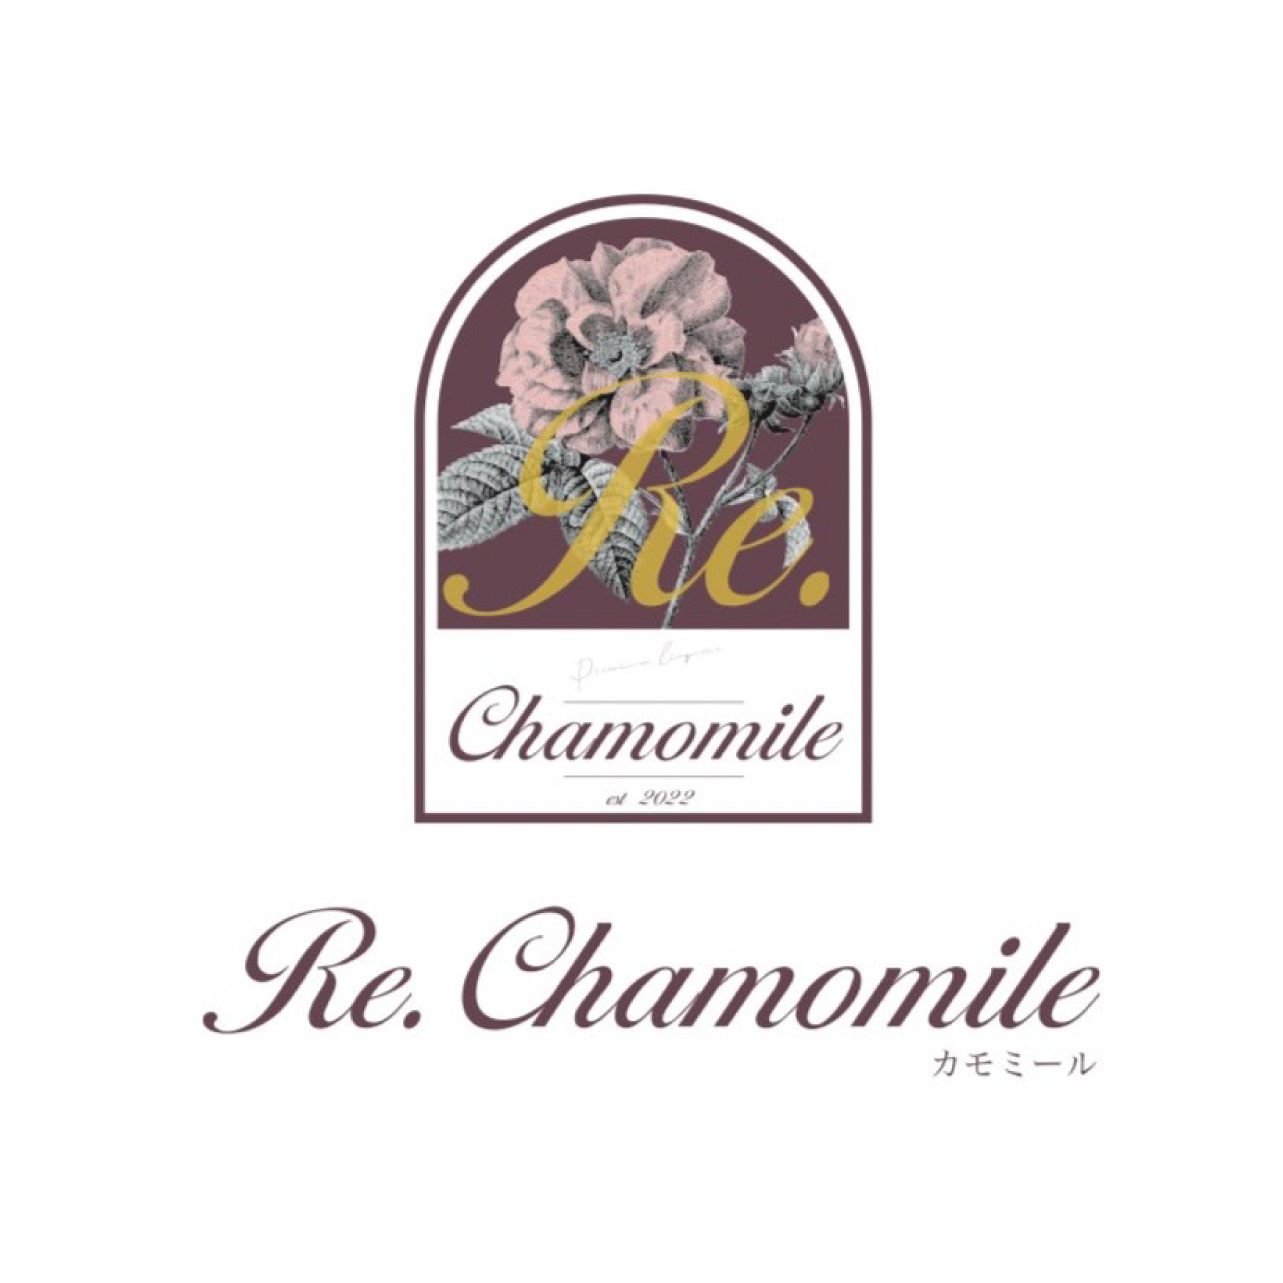 帯広でハーブピーリングや毛穴洗浄ができるフェイシャルエステならRe.chamomile